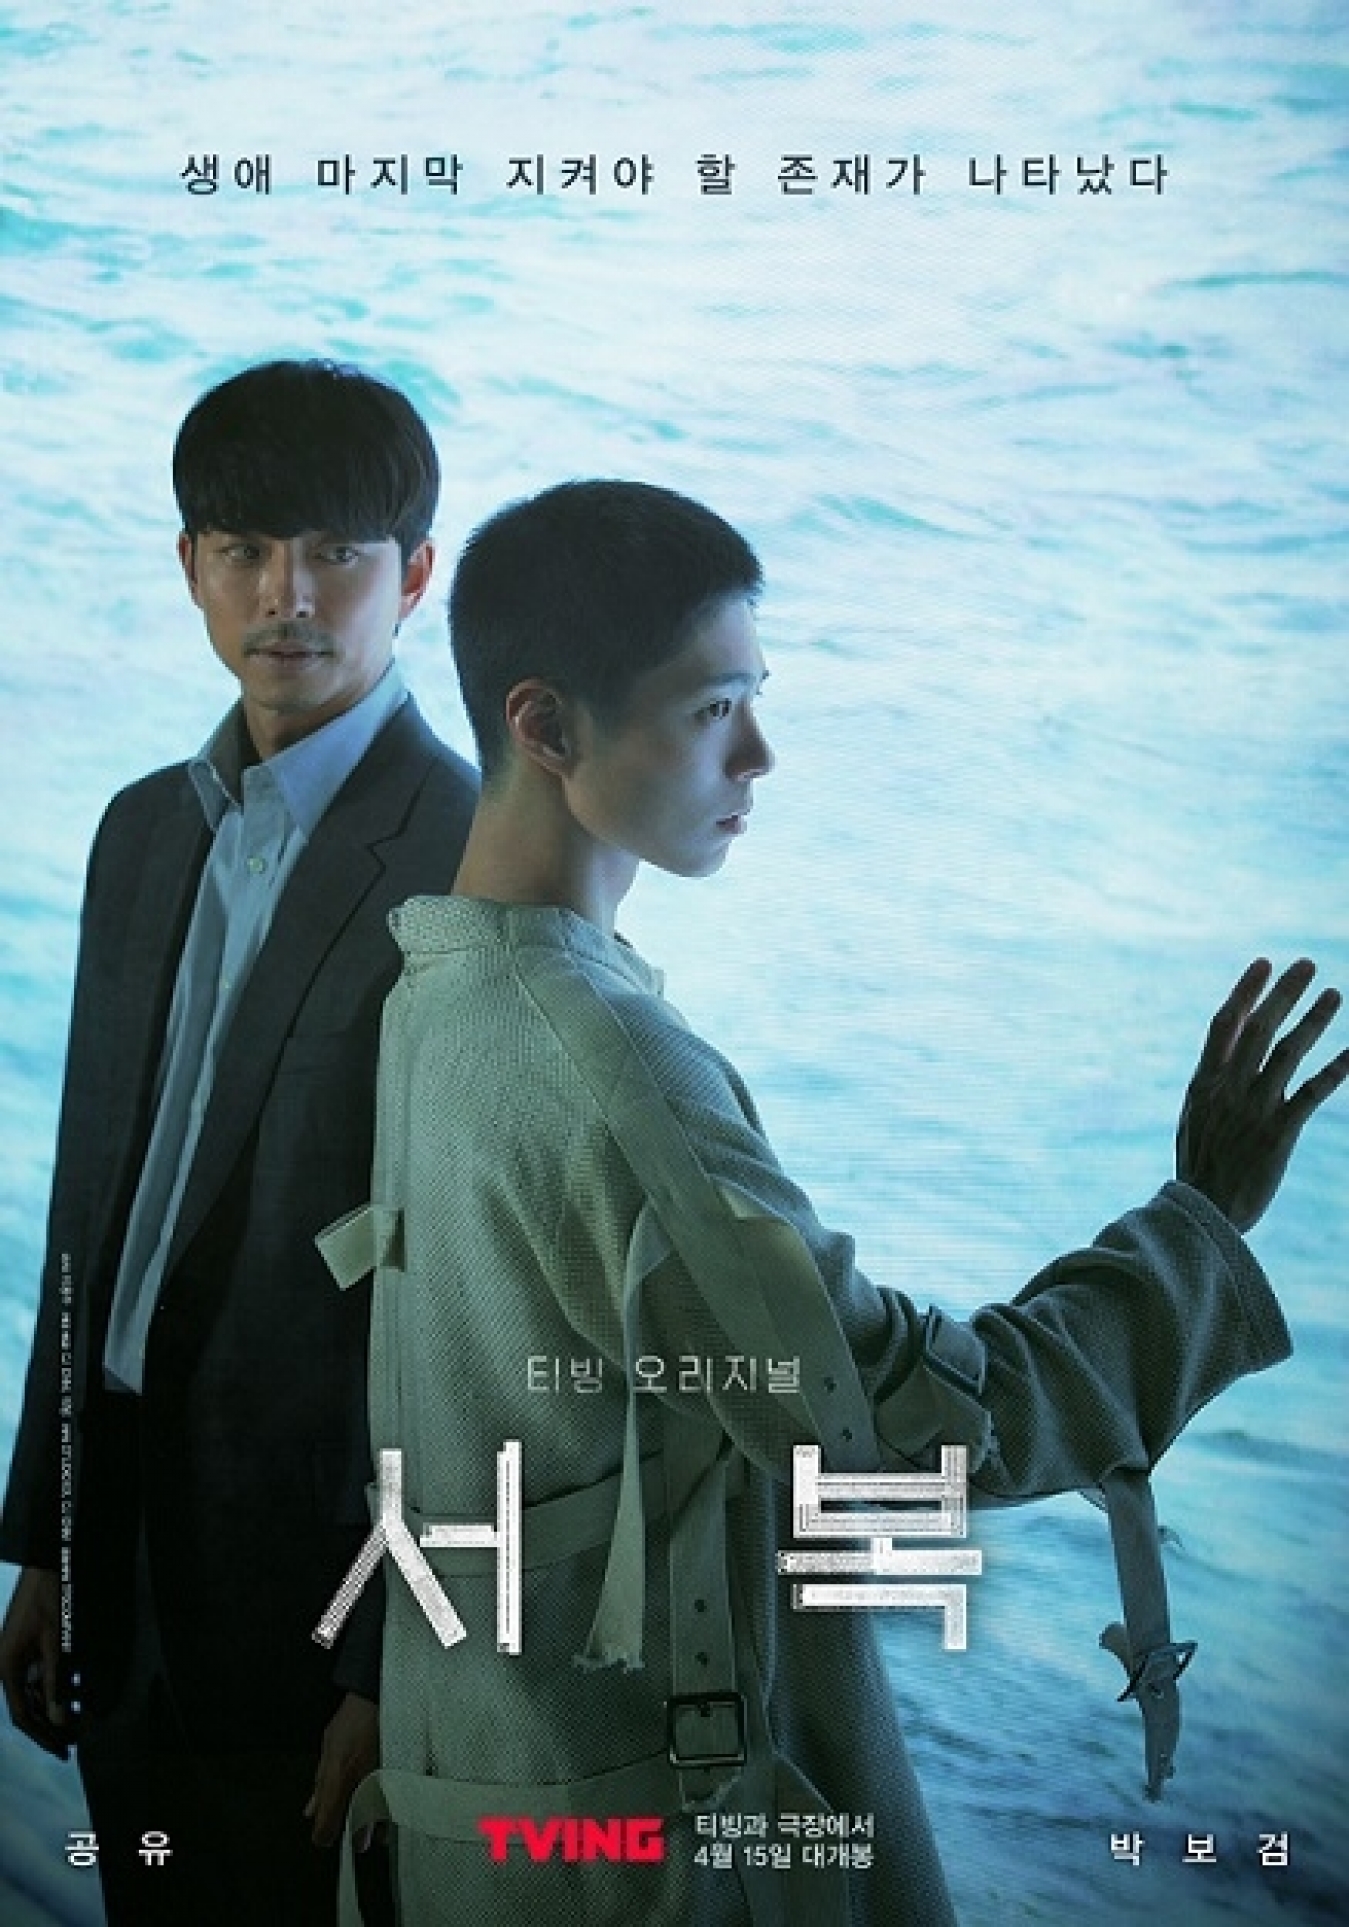 배우 공유와 박보검이 출연한 영화 '서복'이 15일 개봉된다. [사진=티빙]